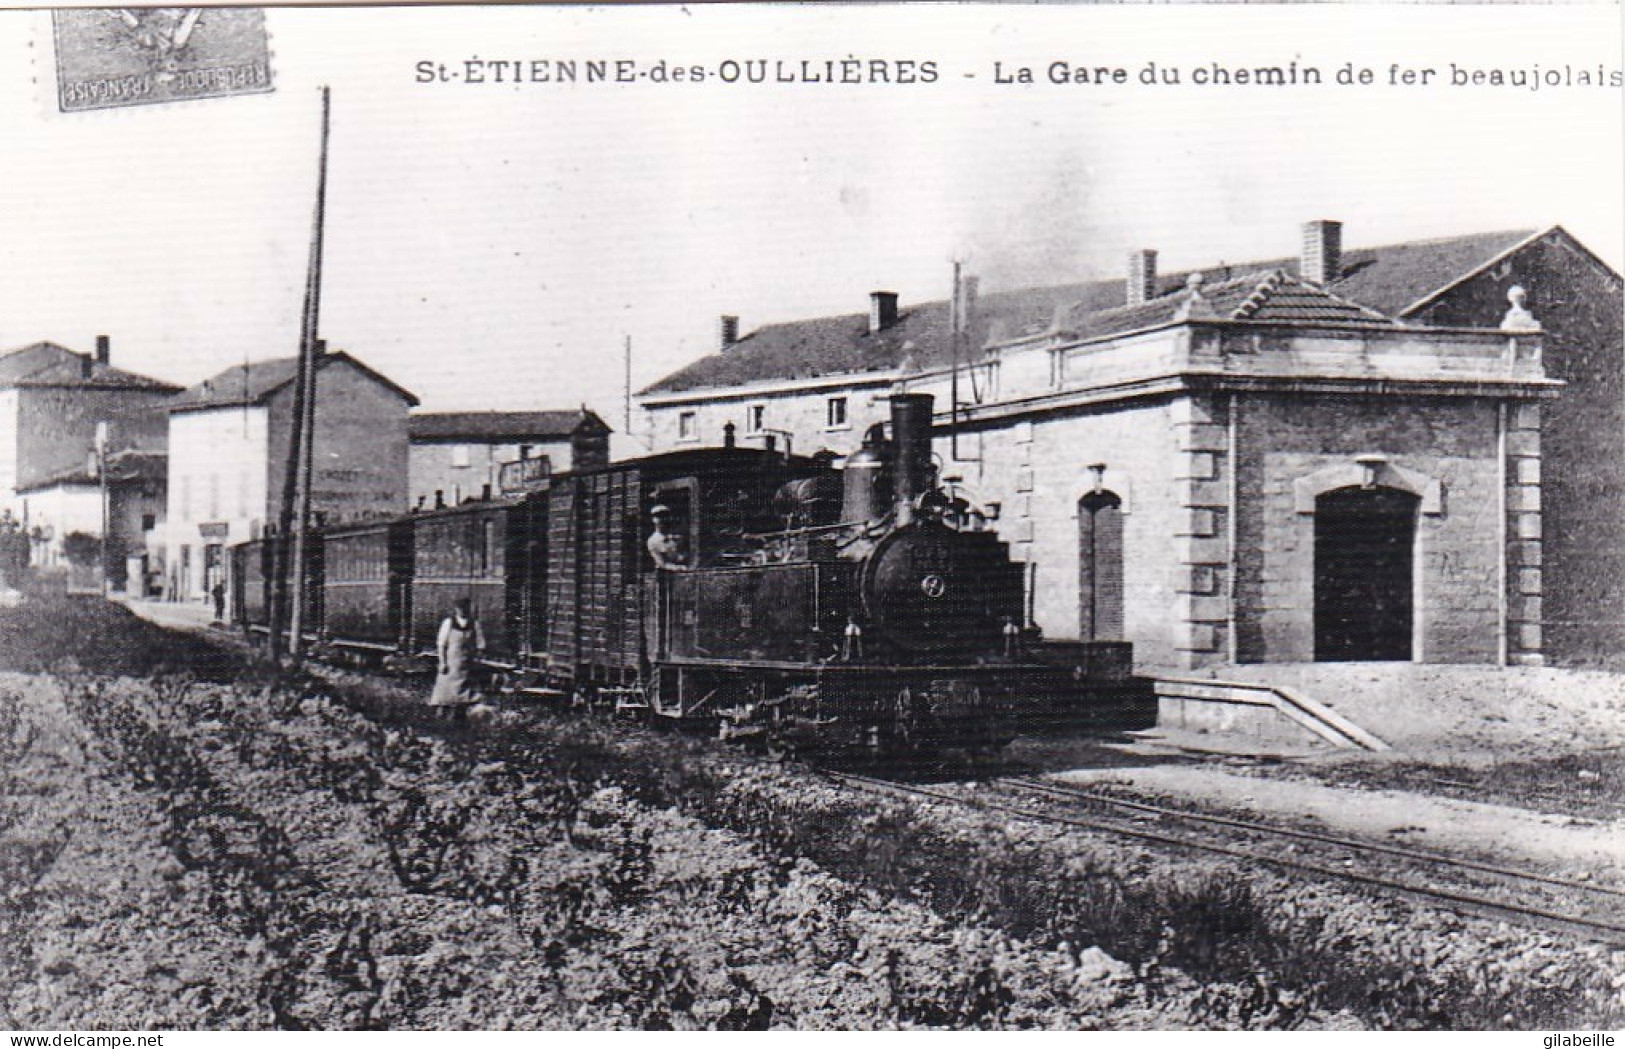 Photo - 69 - Rhone - SAINT ETIENNE Des OULLIERES - La Gare Du C.F.B  - Ligne De Monsols-  Retirage - Sin Clasificación